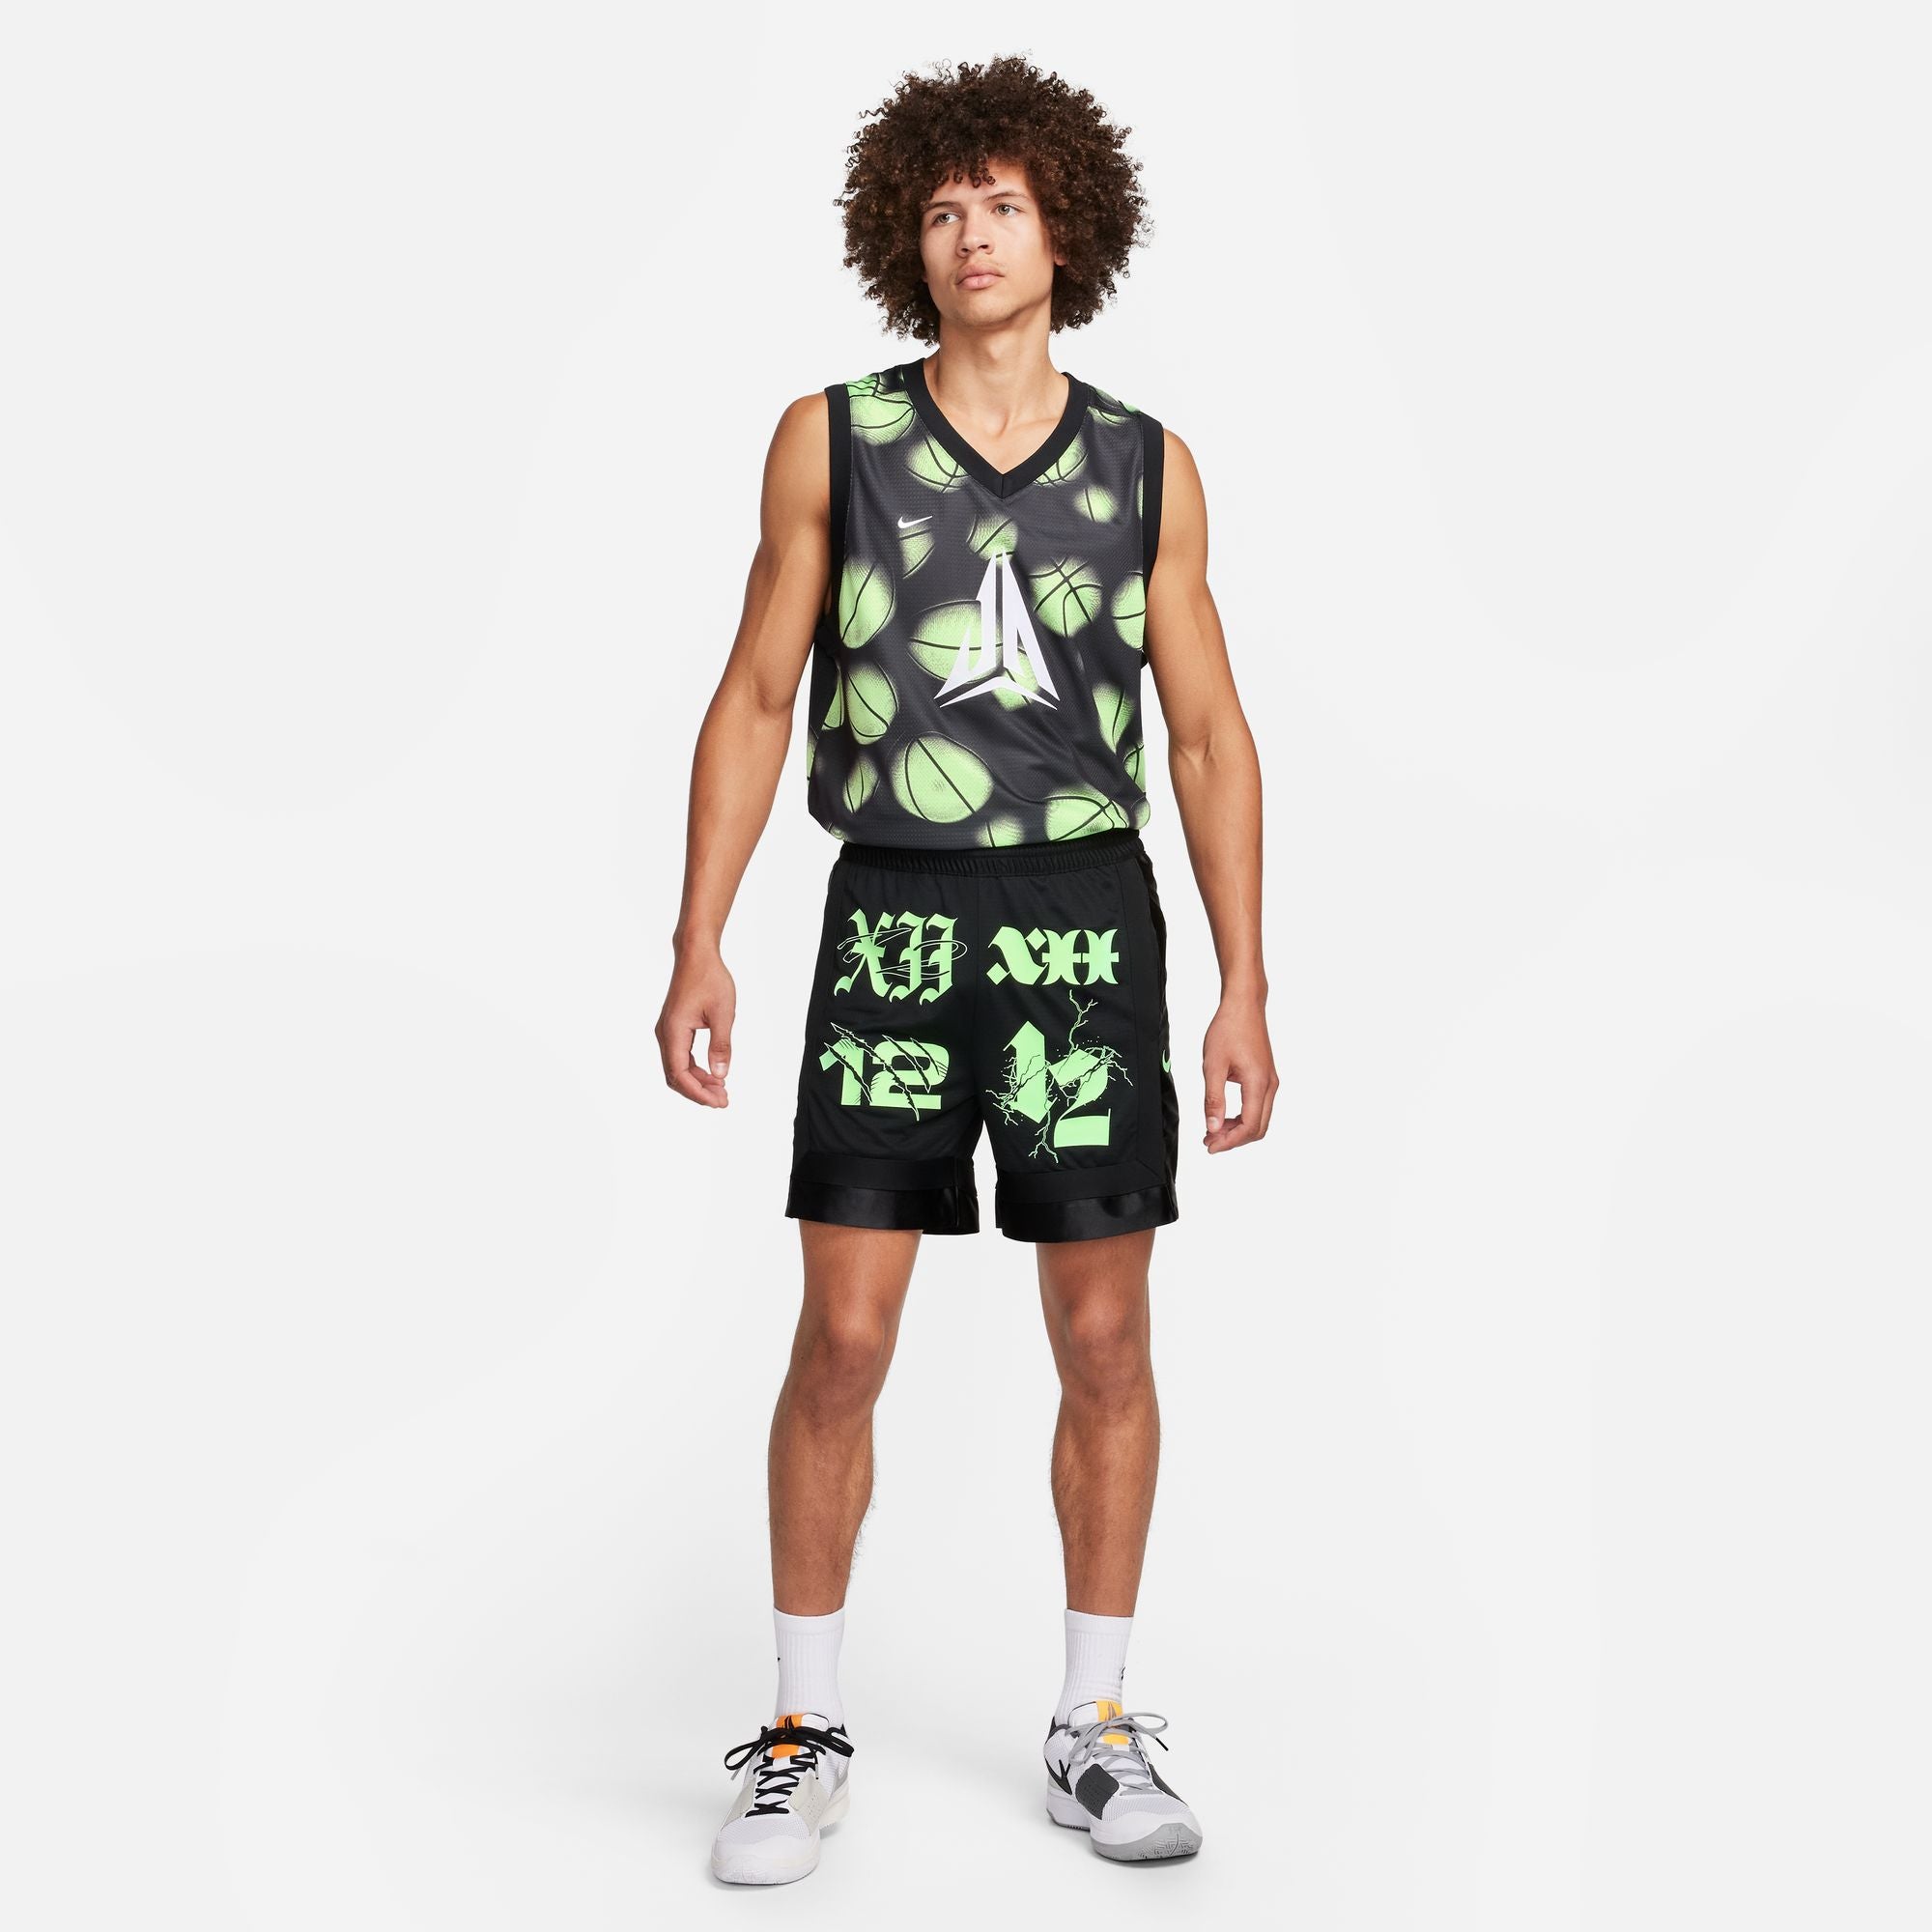 Nike Ja Morant Dri-FIT DNA 6" Basketball Shorts